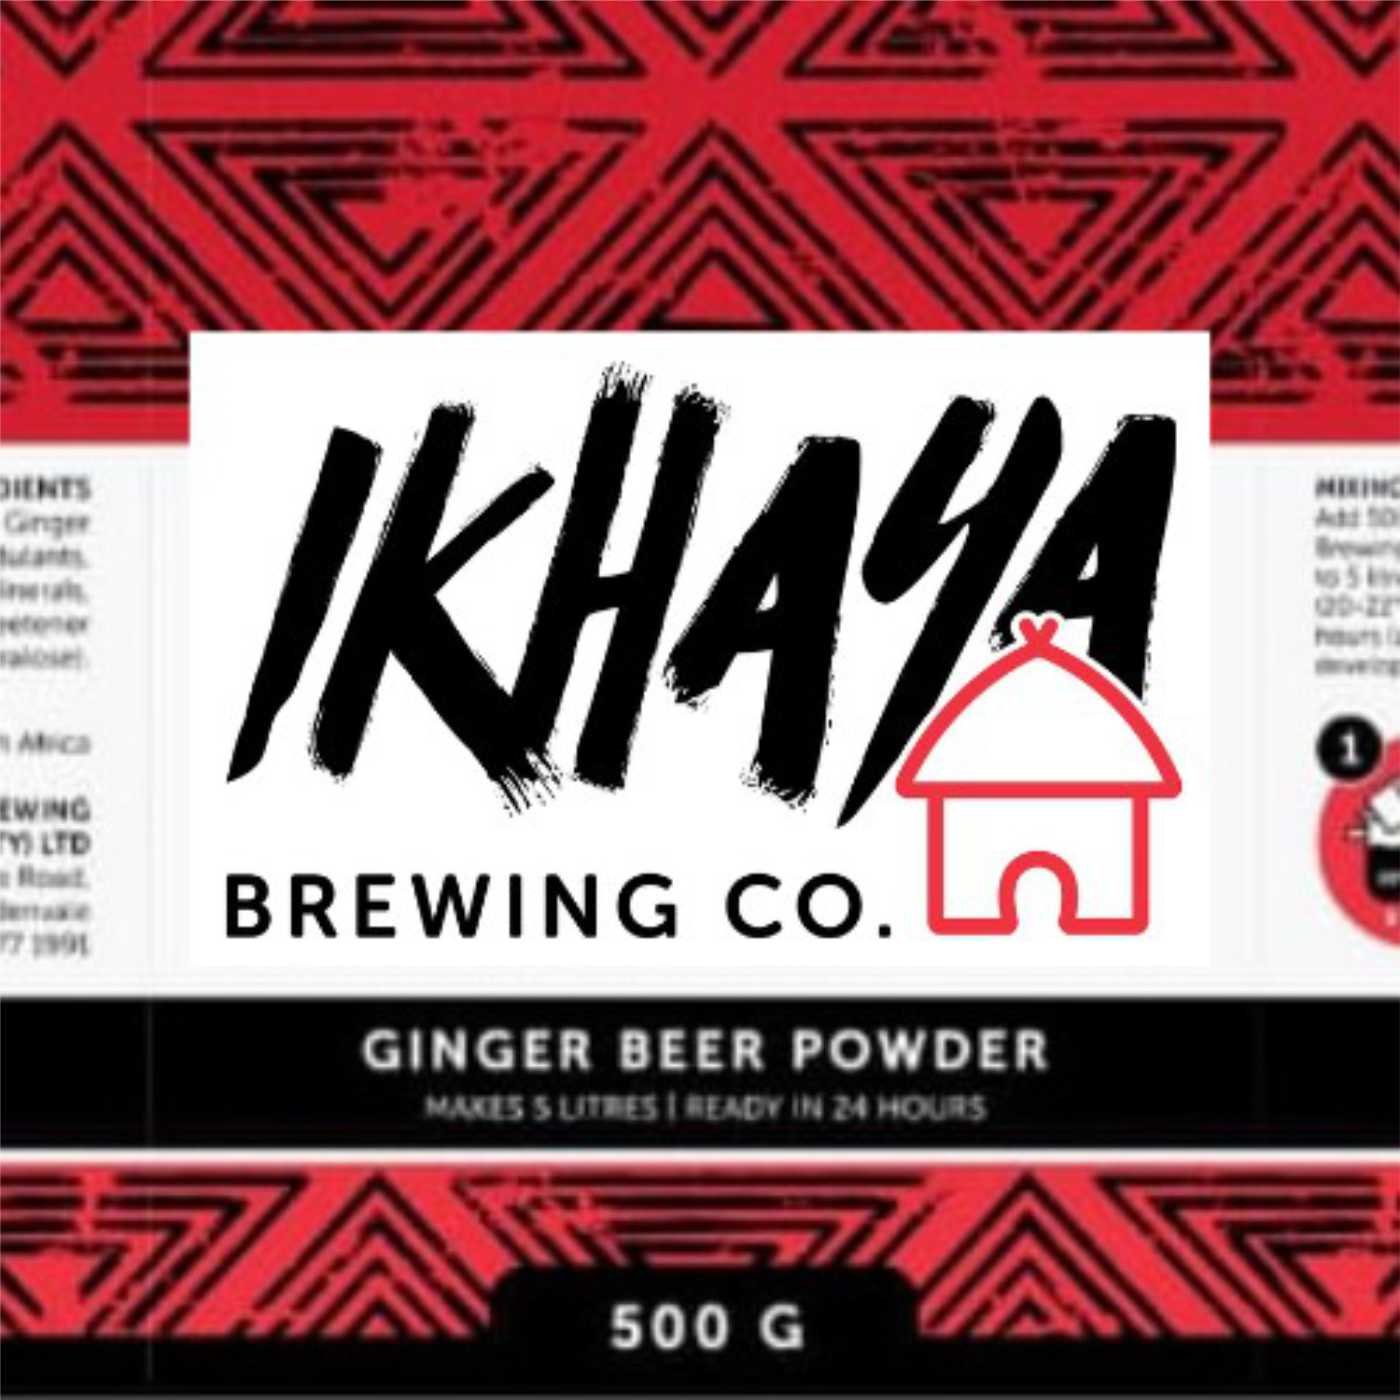 iKhaya Brewing Company Social Media Ads by Buzza Digital Marketing